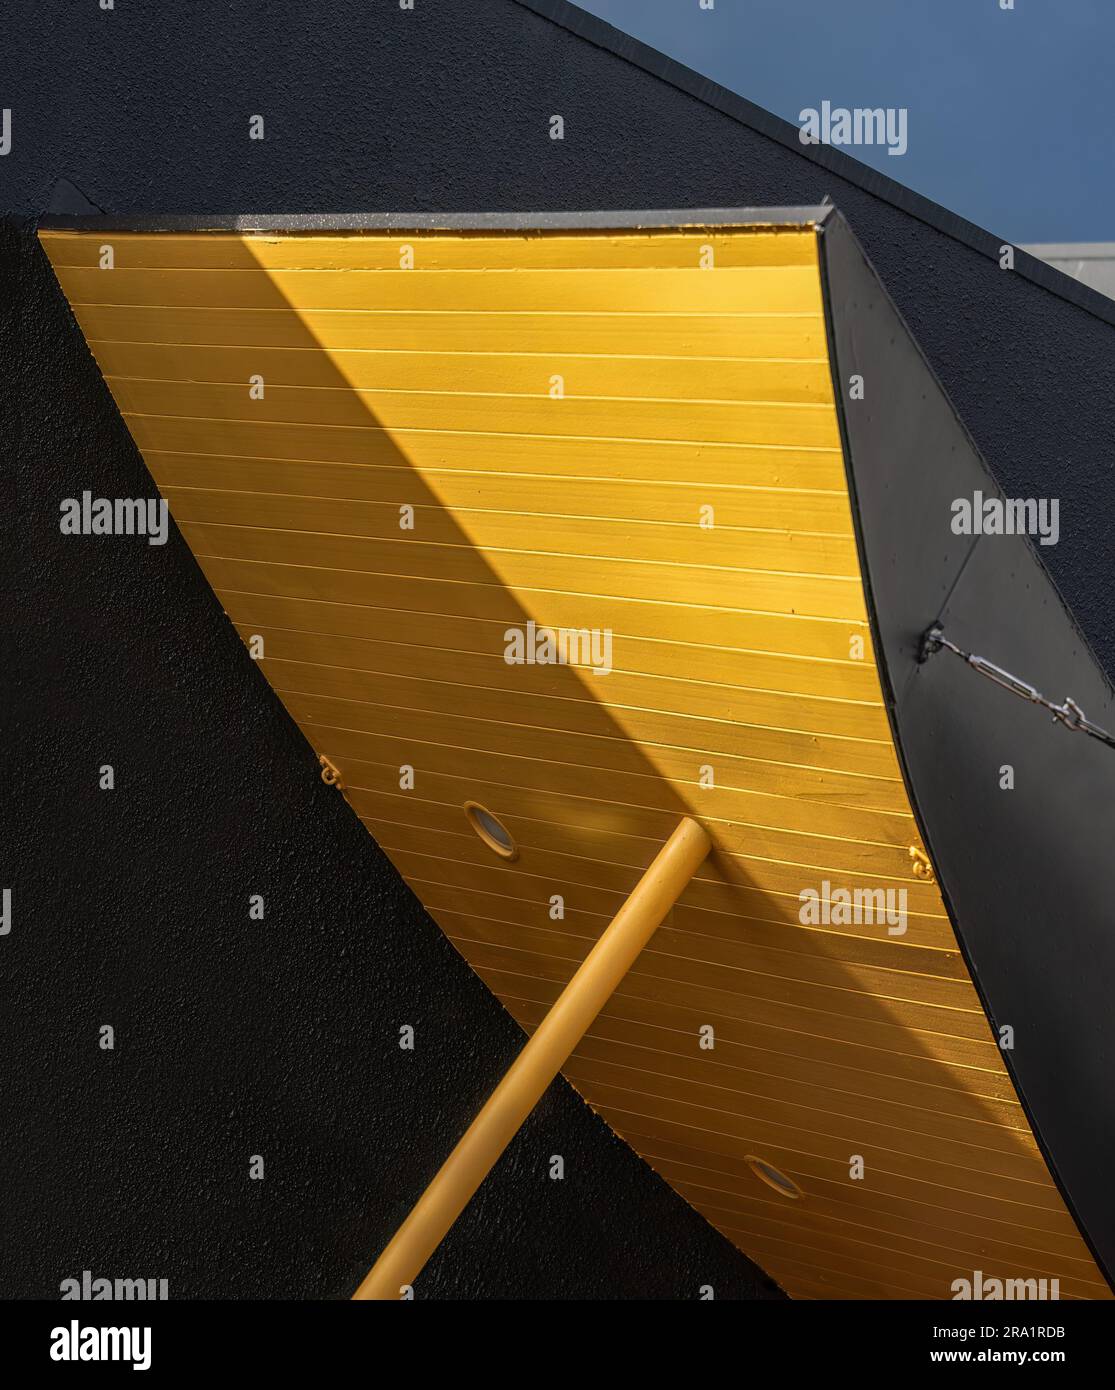 Immagine astratta di pannello di legno giallo e parete nera contro un cielo blu. Formato verticale. Foto Stock